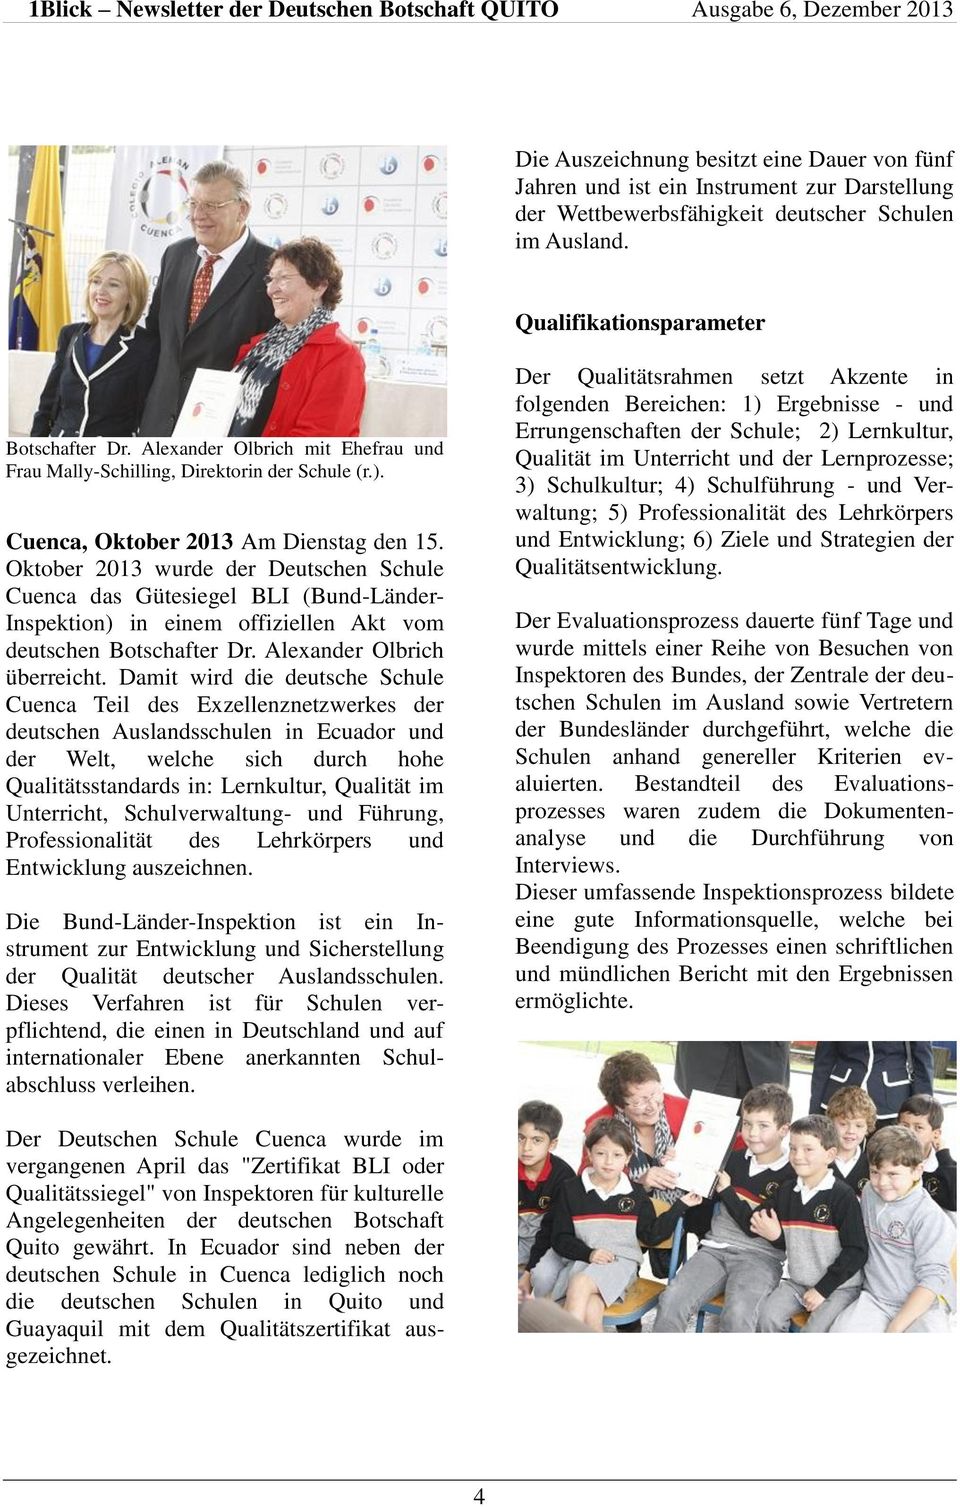 Oktober 2013 wurde der Deutschen Schule Cuenca das Gütesiegel BLI (Bund-Länder- Inspektion) in einem offiziellen Akt vom deutschen Botschafter Dr. Alexander Olbrich überreicht.